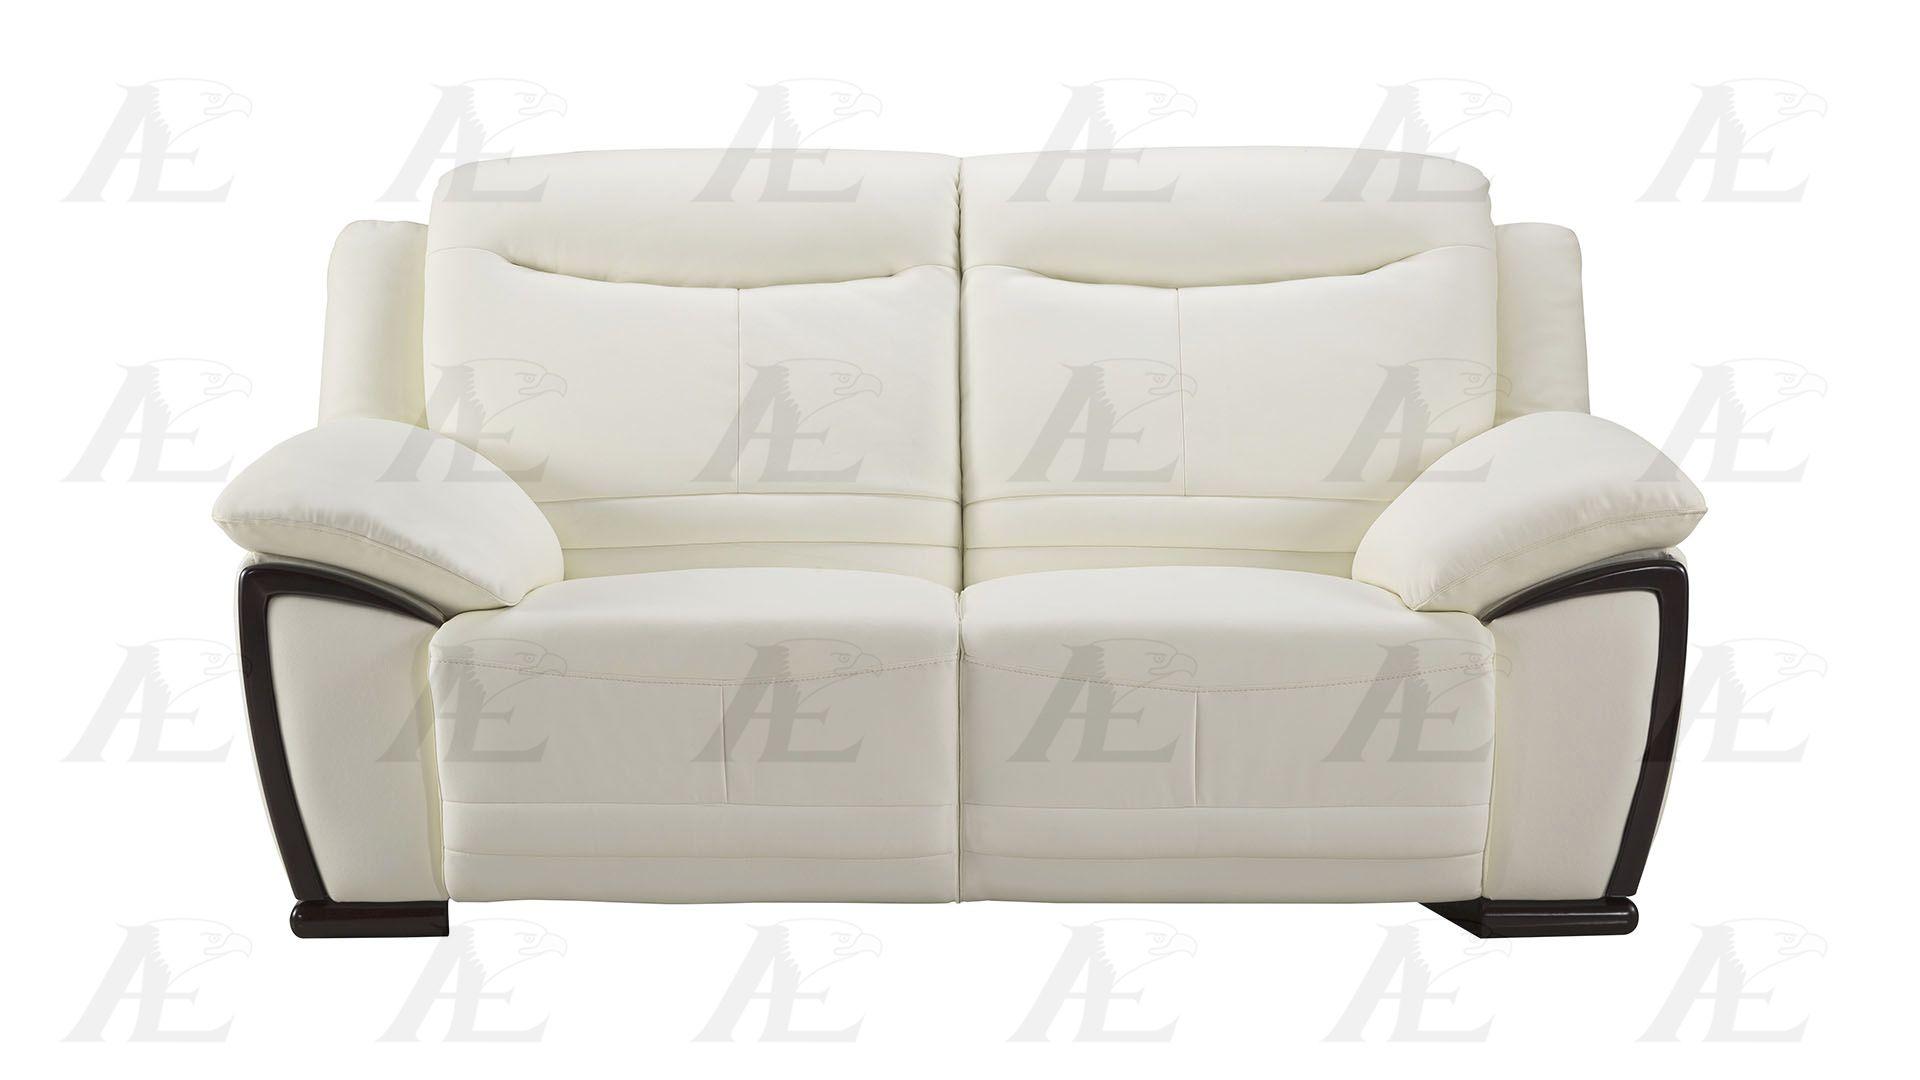 

    
American Eagle Furniture EK-B308-W Sofa and Loveseat Set White EK-B308-W Set-2
